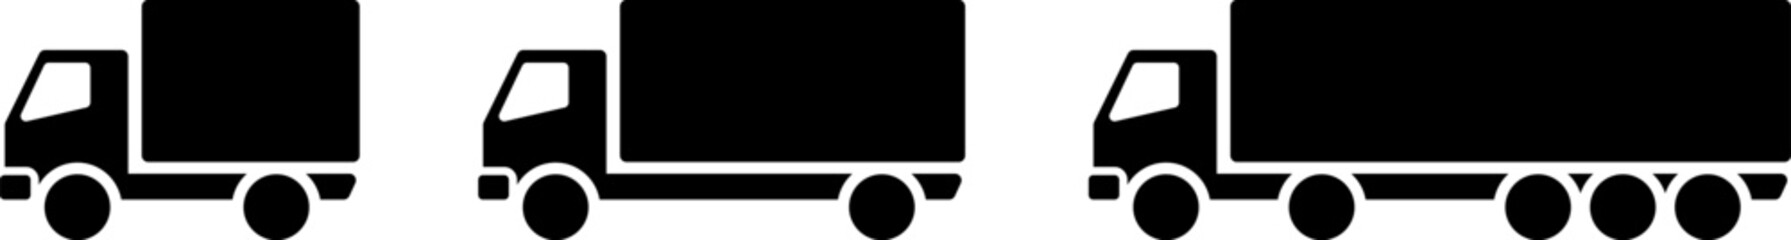 配達のトラックや大型トラックのアイコン素材セット